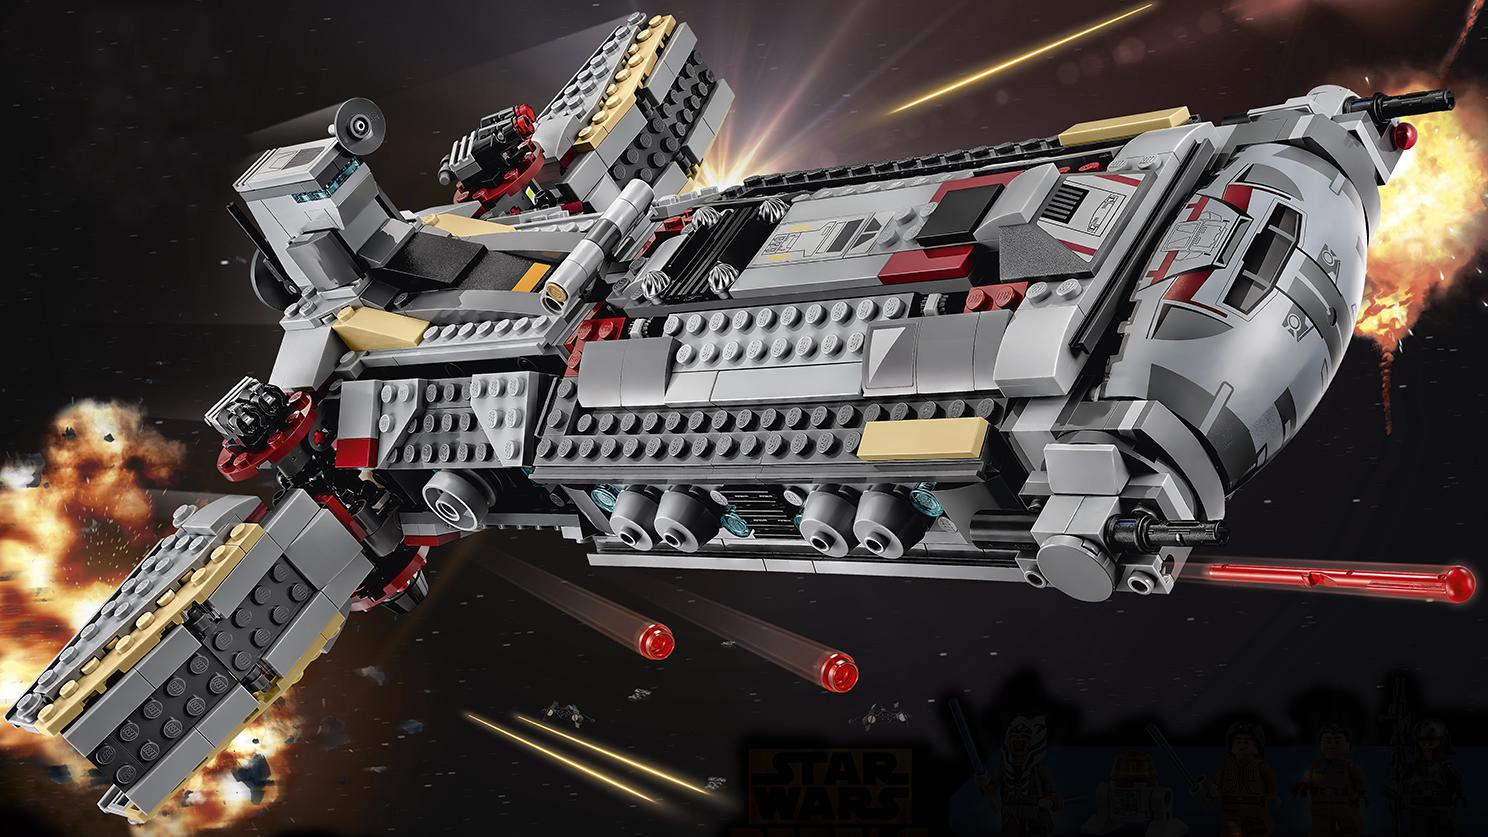 Star Wars Lego Building Sets